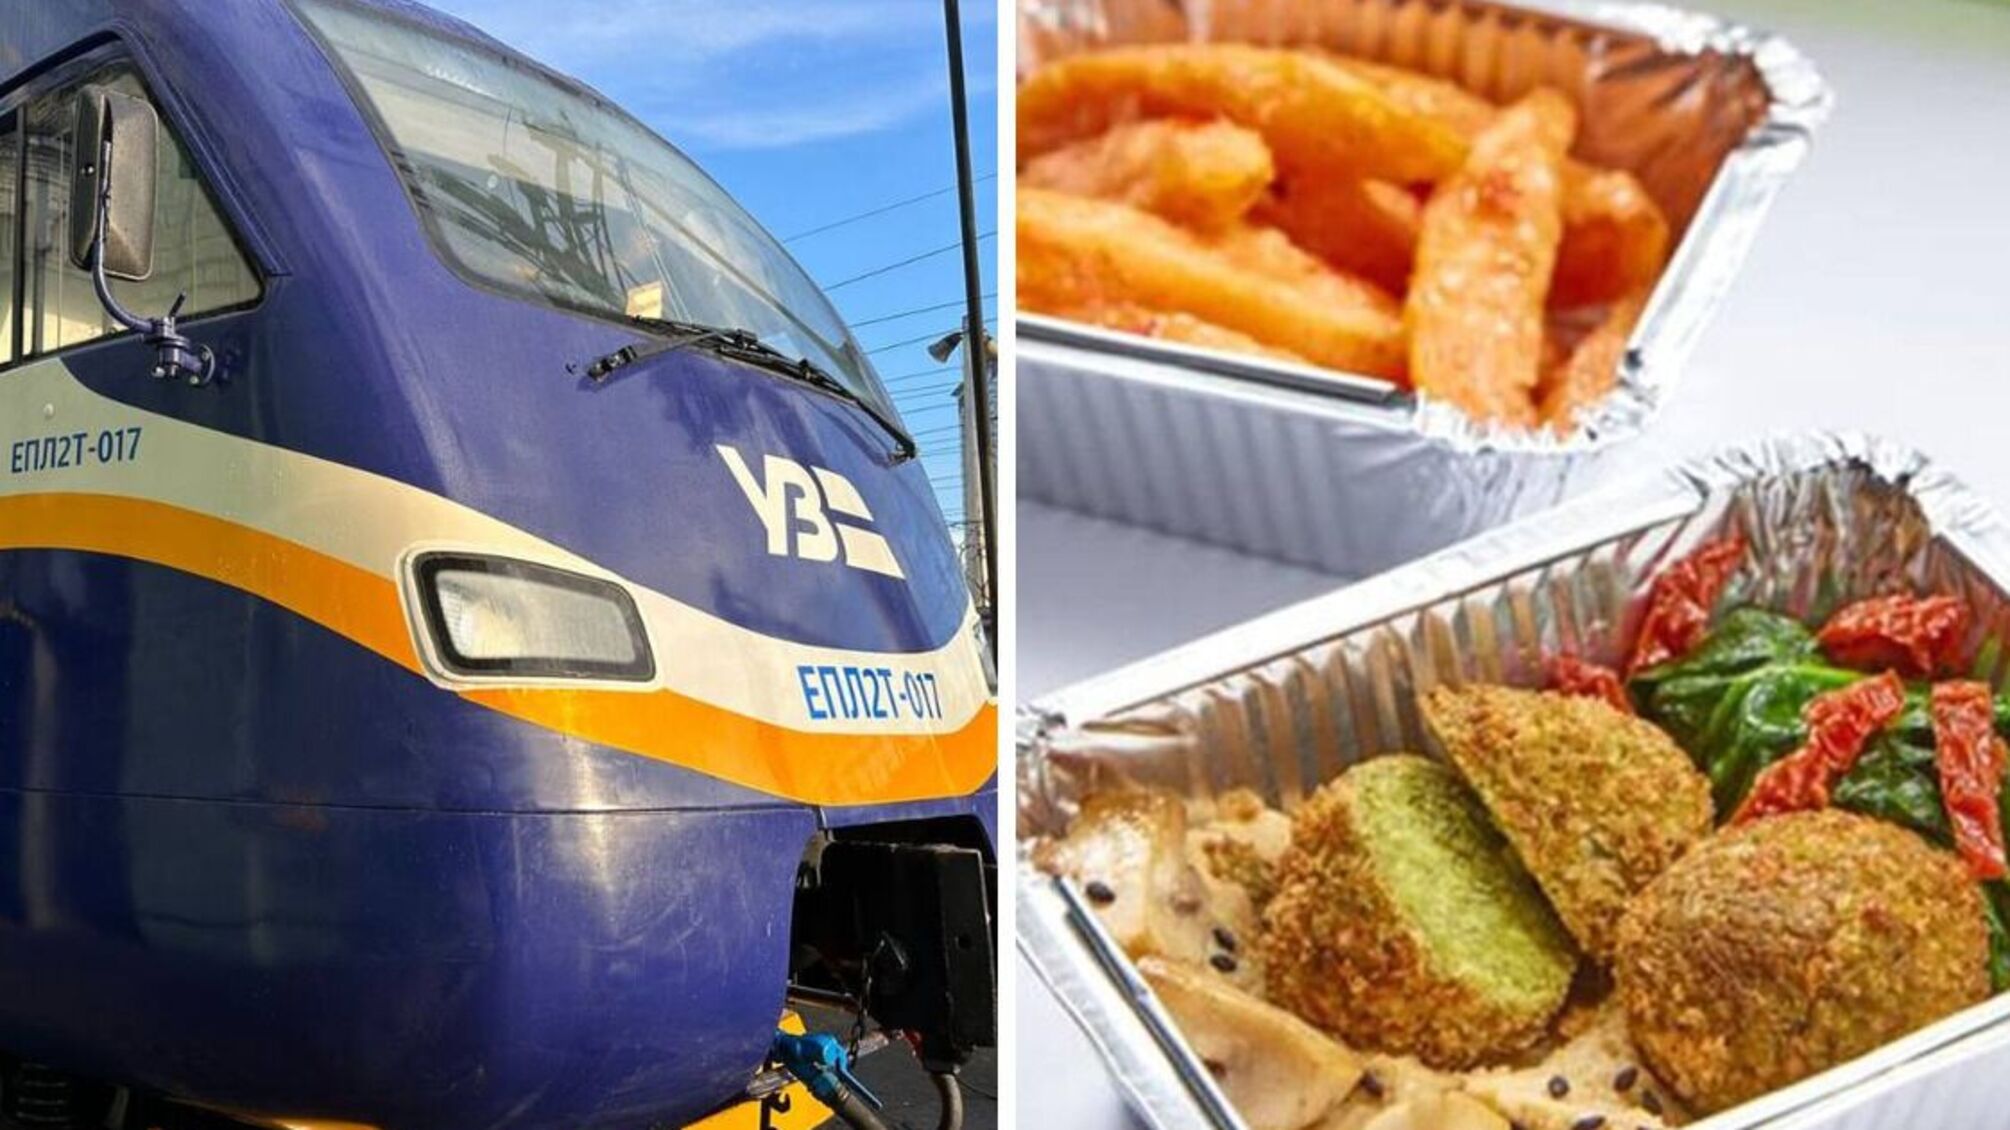 Укрзализныця ищет ресторатора, который будет кормить пассажиров в скоростных поездах Интерсити+